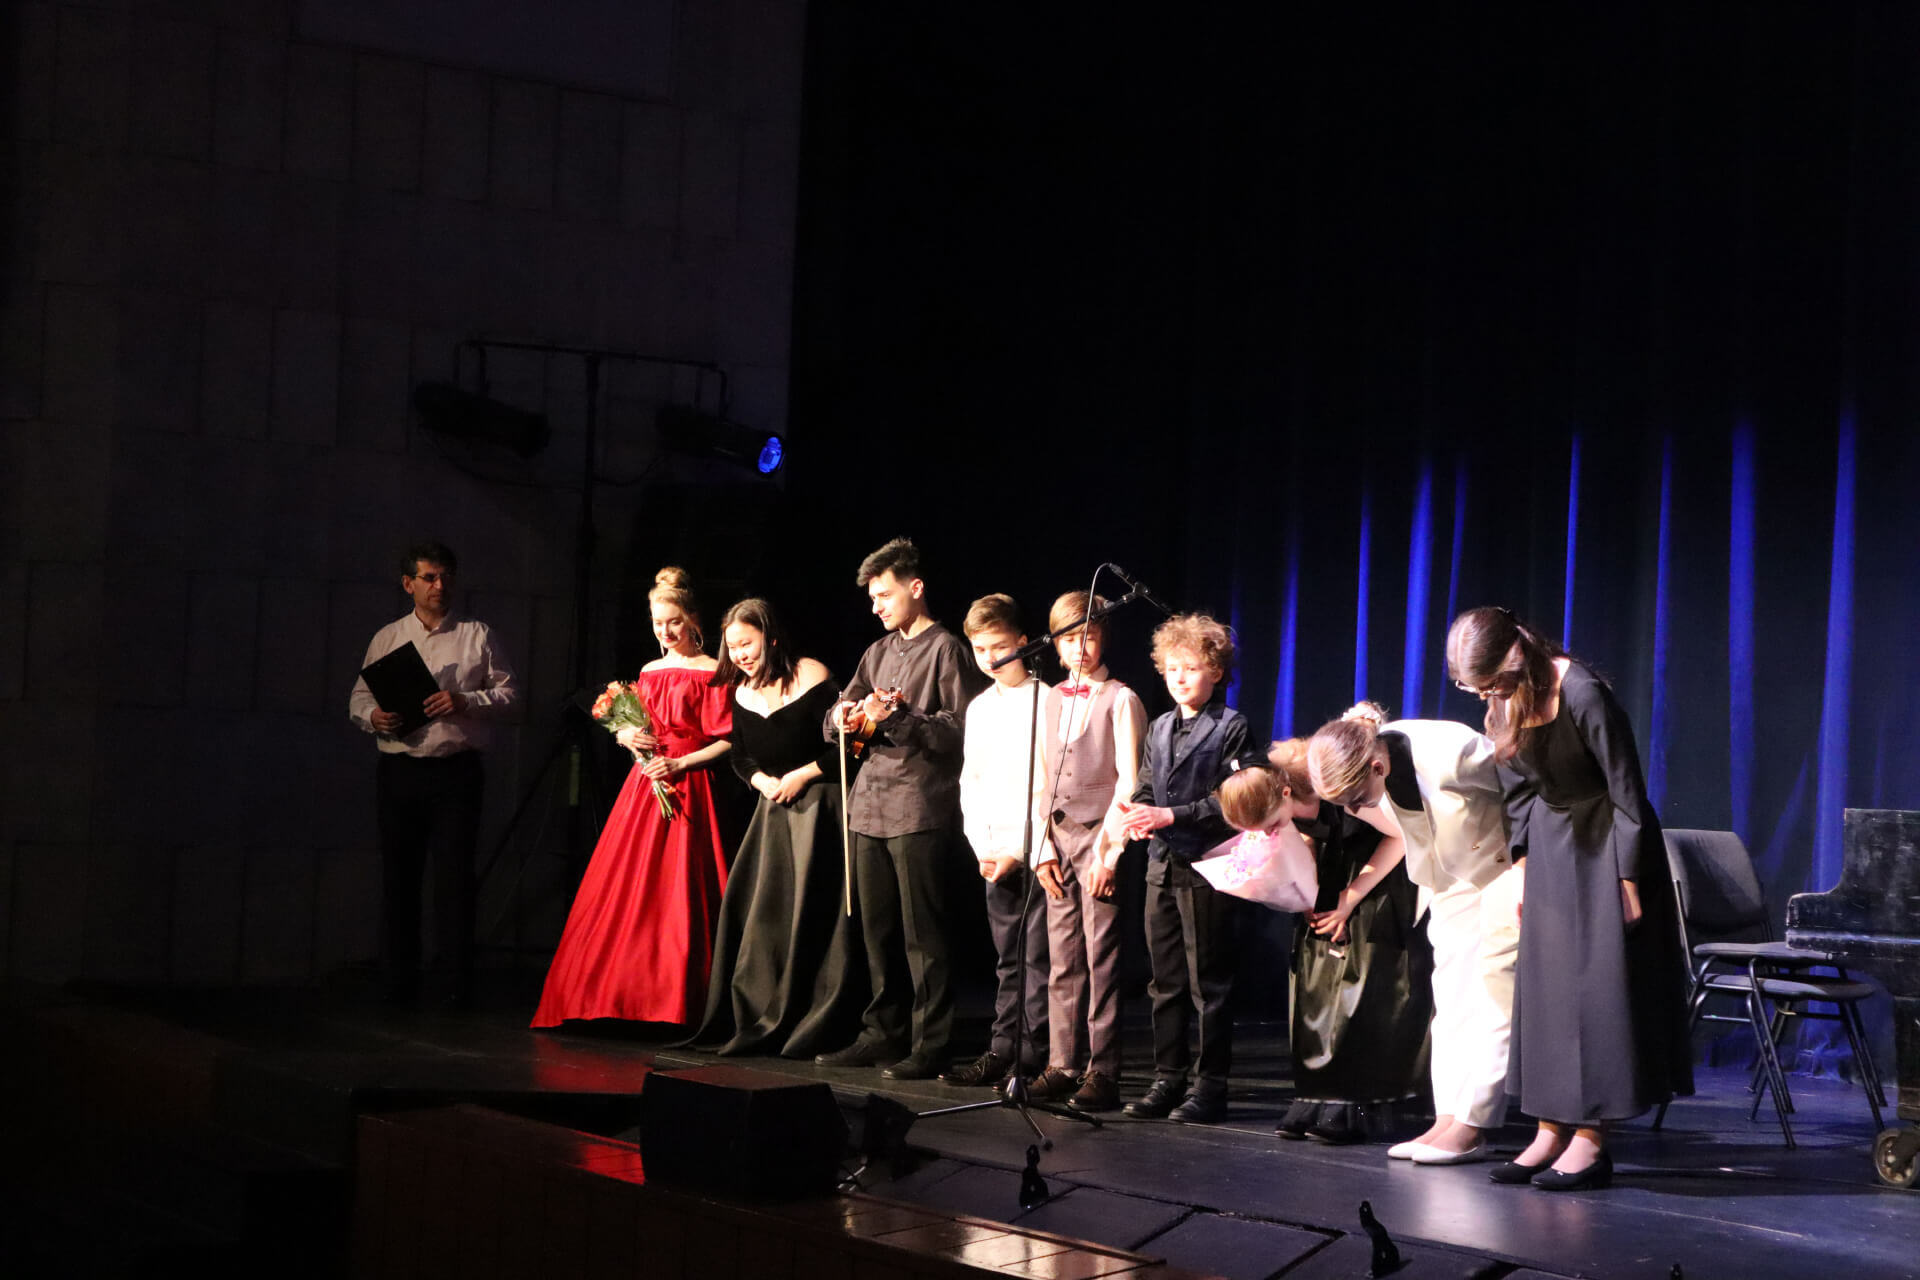 17 мая 2022 года в Малом зале Культурного центра «ЗИЛ» состоялся концерт стипендиатов Международного благотворительного фонда Владимира Спивакова